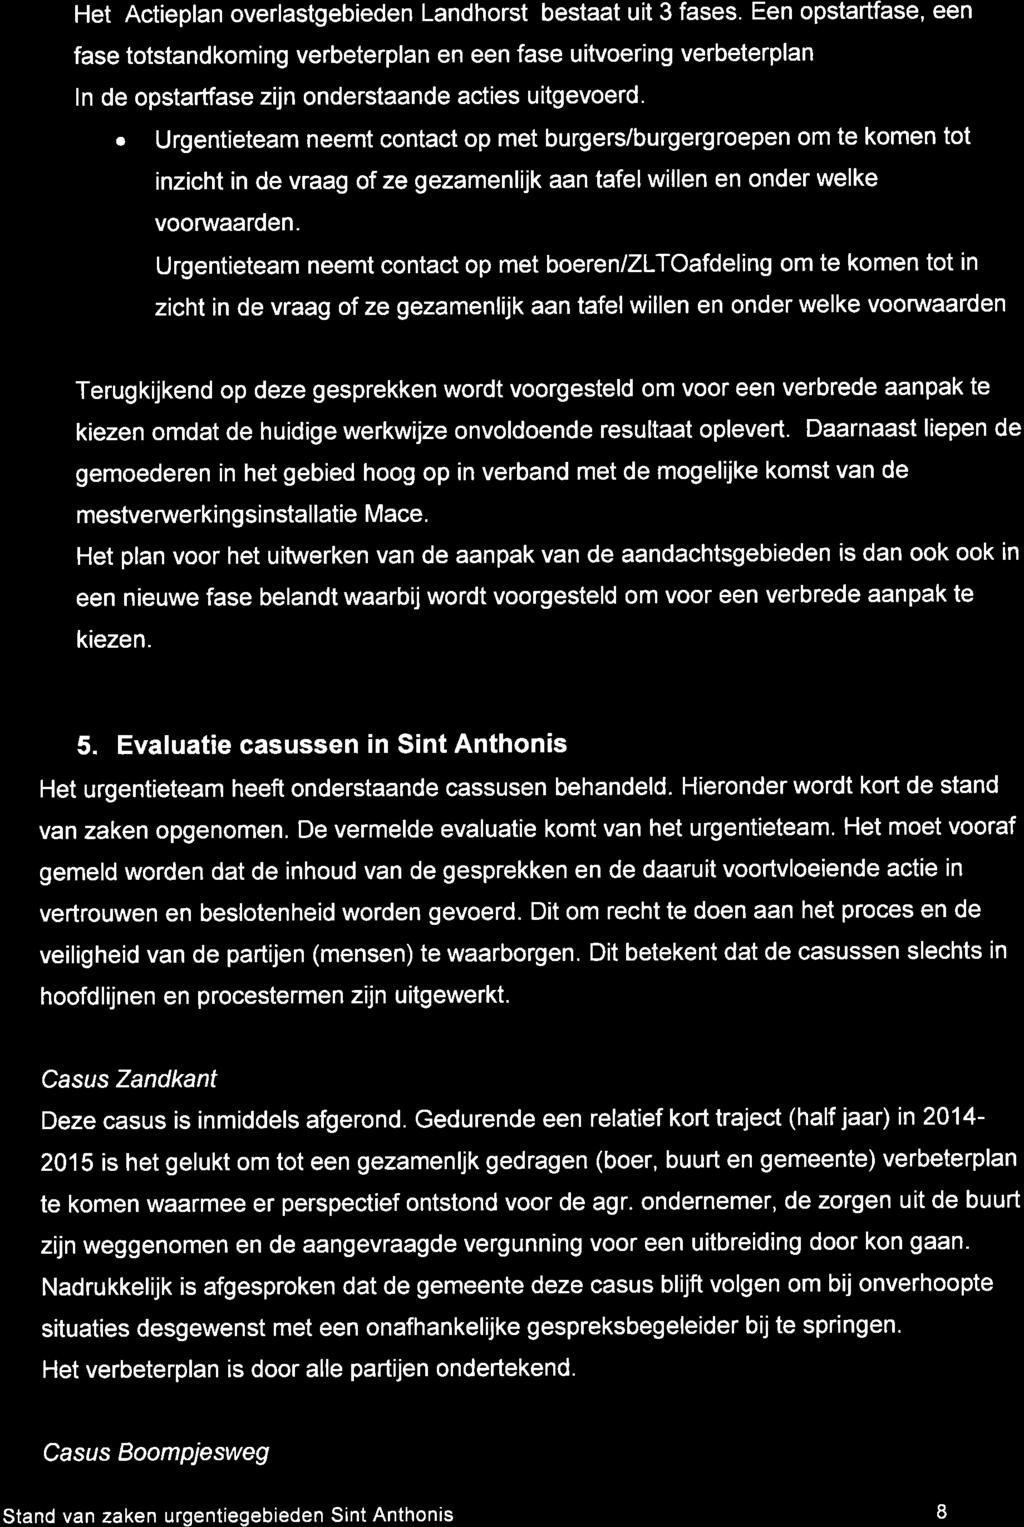 Het Actieplan overlastgebieden Landhorst bestaat uit 3 fases.